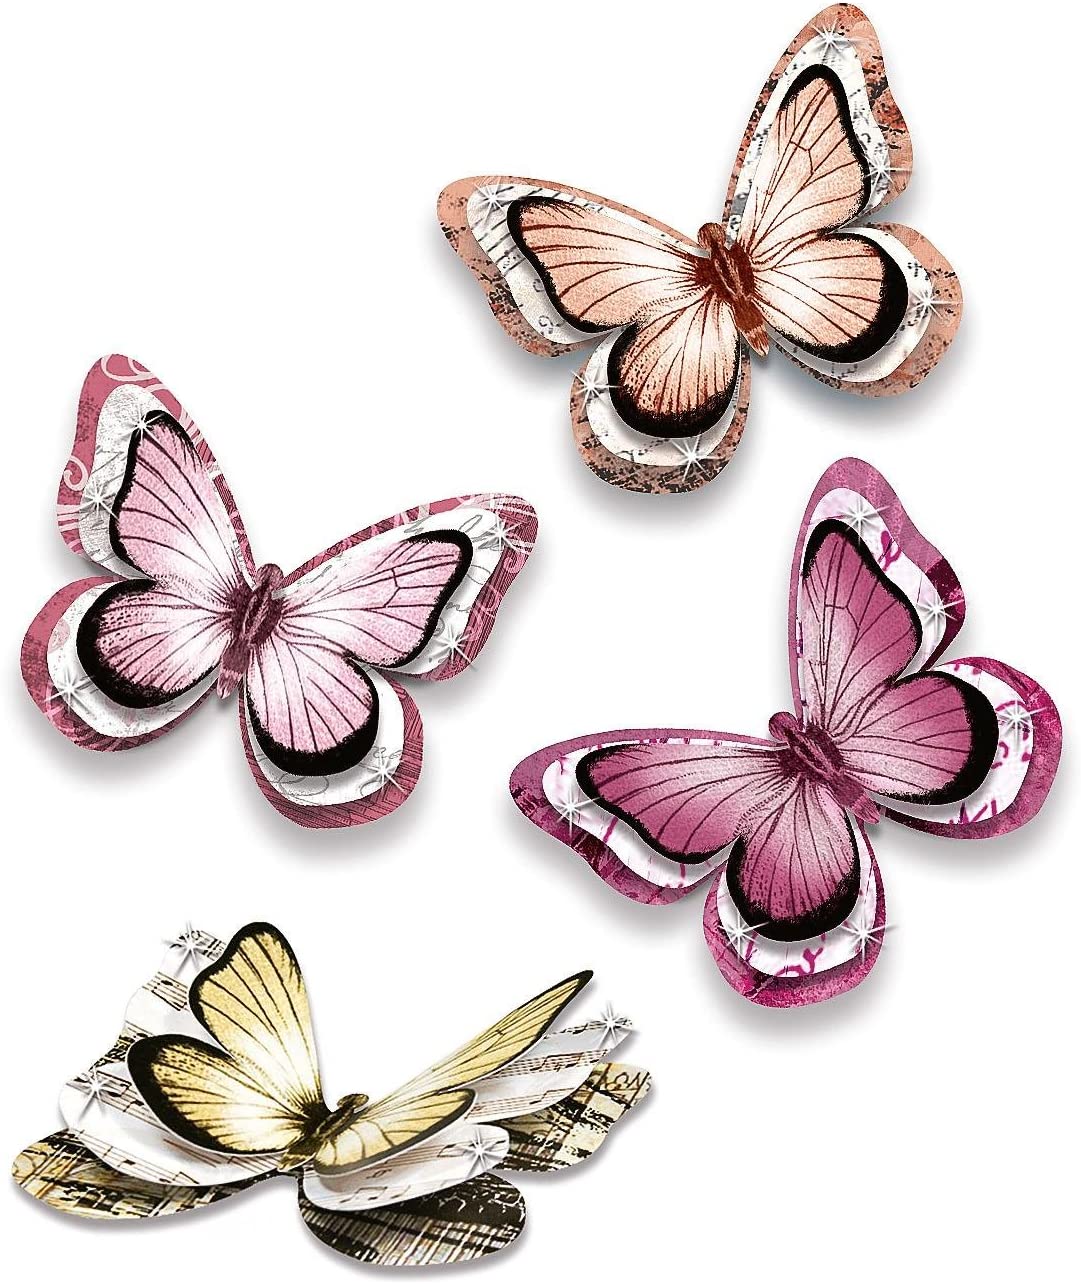 Vezi detalii pentru Set de creație - 24 de fluturi 3D autoadezivi în culori romantice